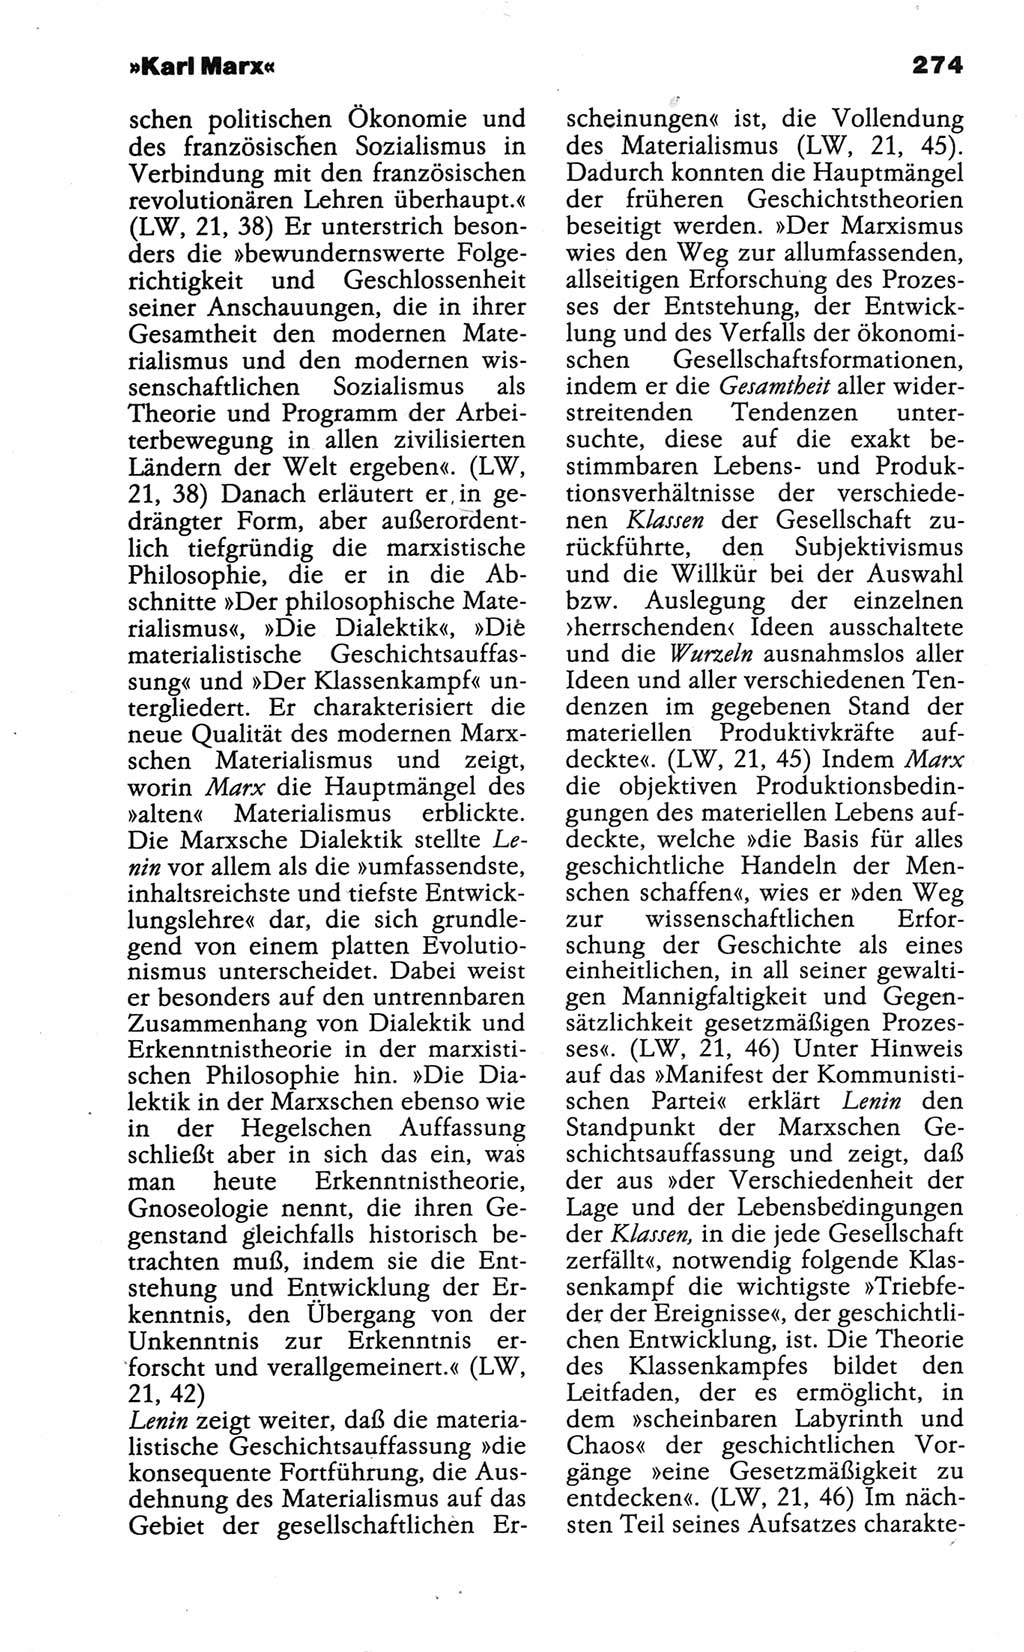 Wörterbuch der marxistisch-leninistischen Philosophie [Deutsche Demokratische Republik (DDR)] 1986, Seite 274 (Wb. ML Phil. DDR 1986, S. 274)